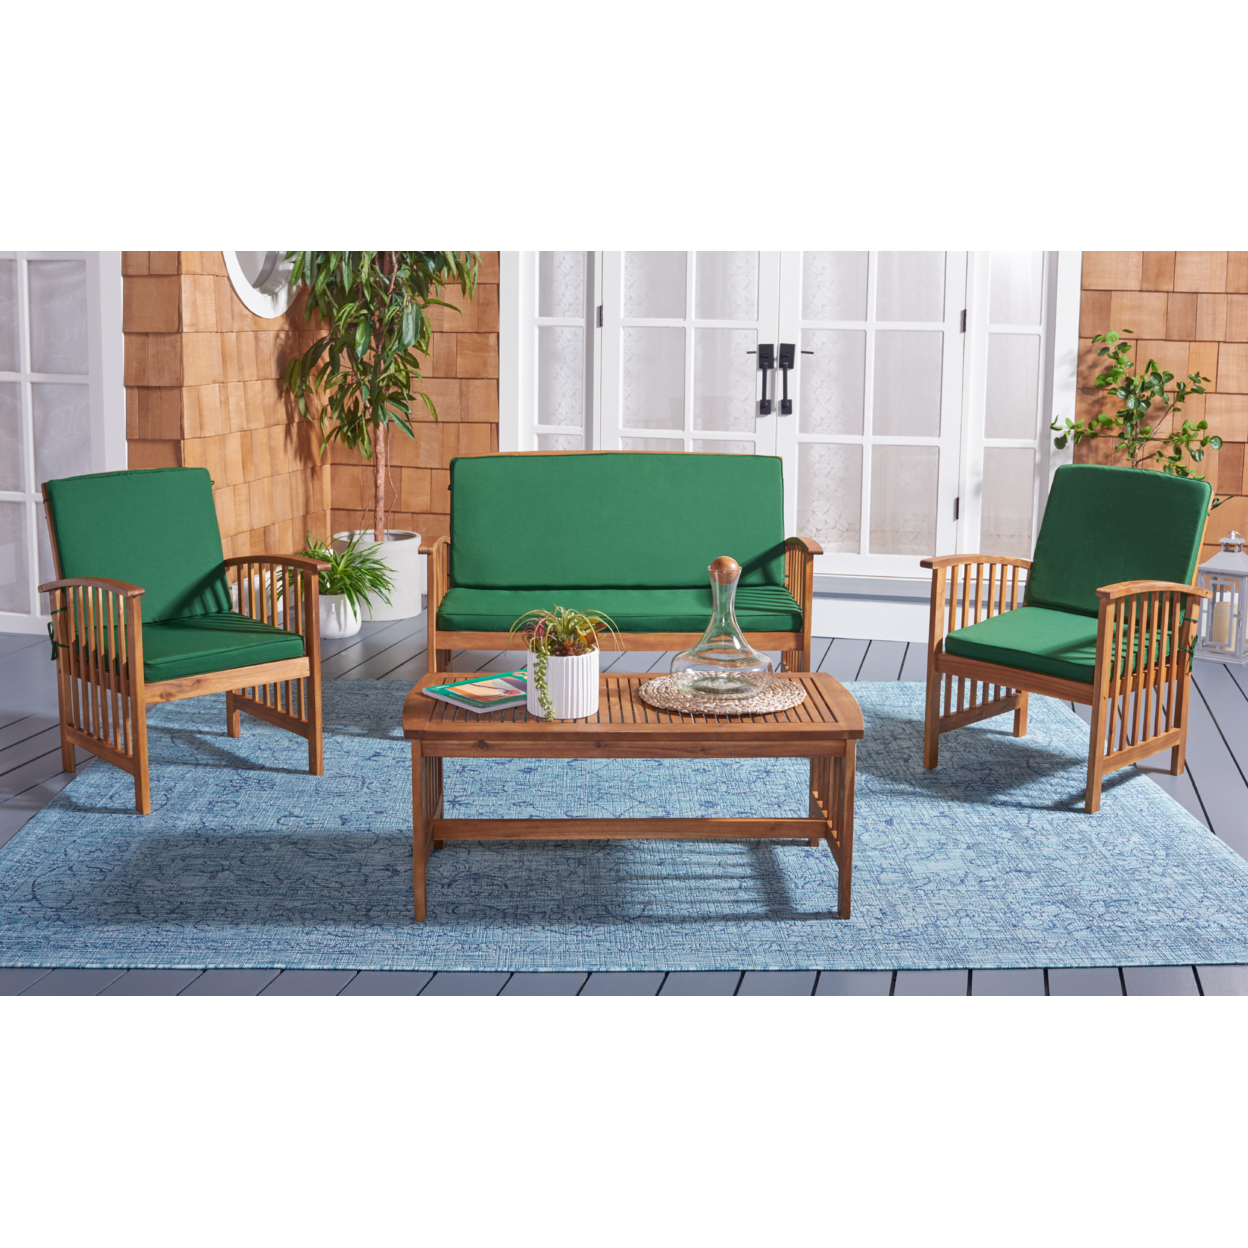 SAFAVIEH Outdoor Collection Rocklin 4-Piece Patio Set Natural/Green Cushion